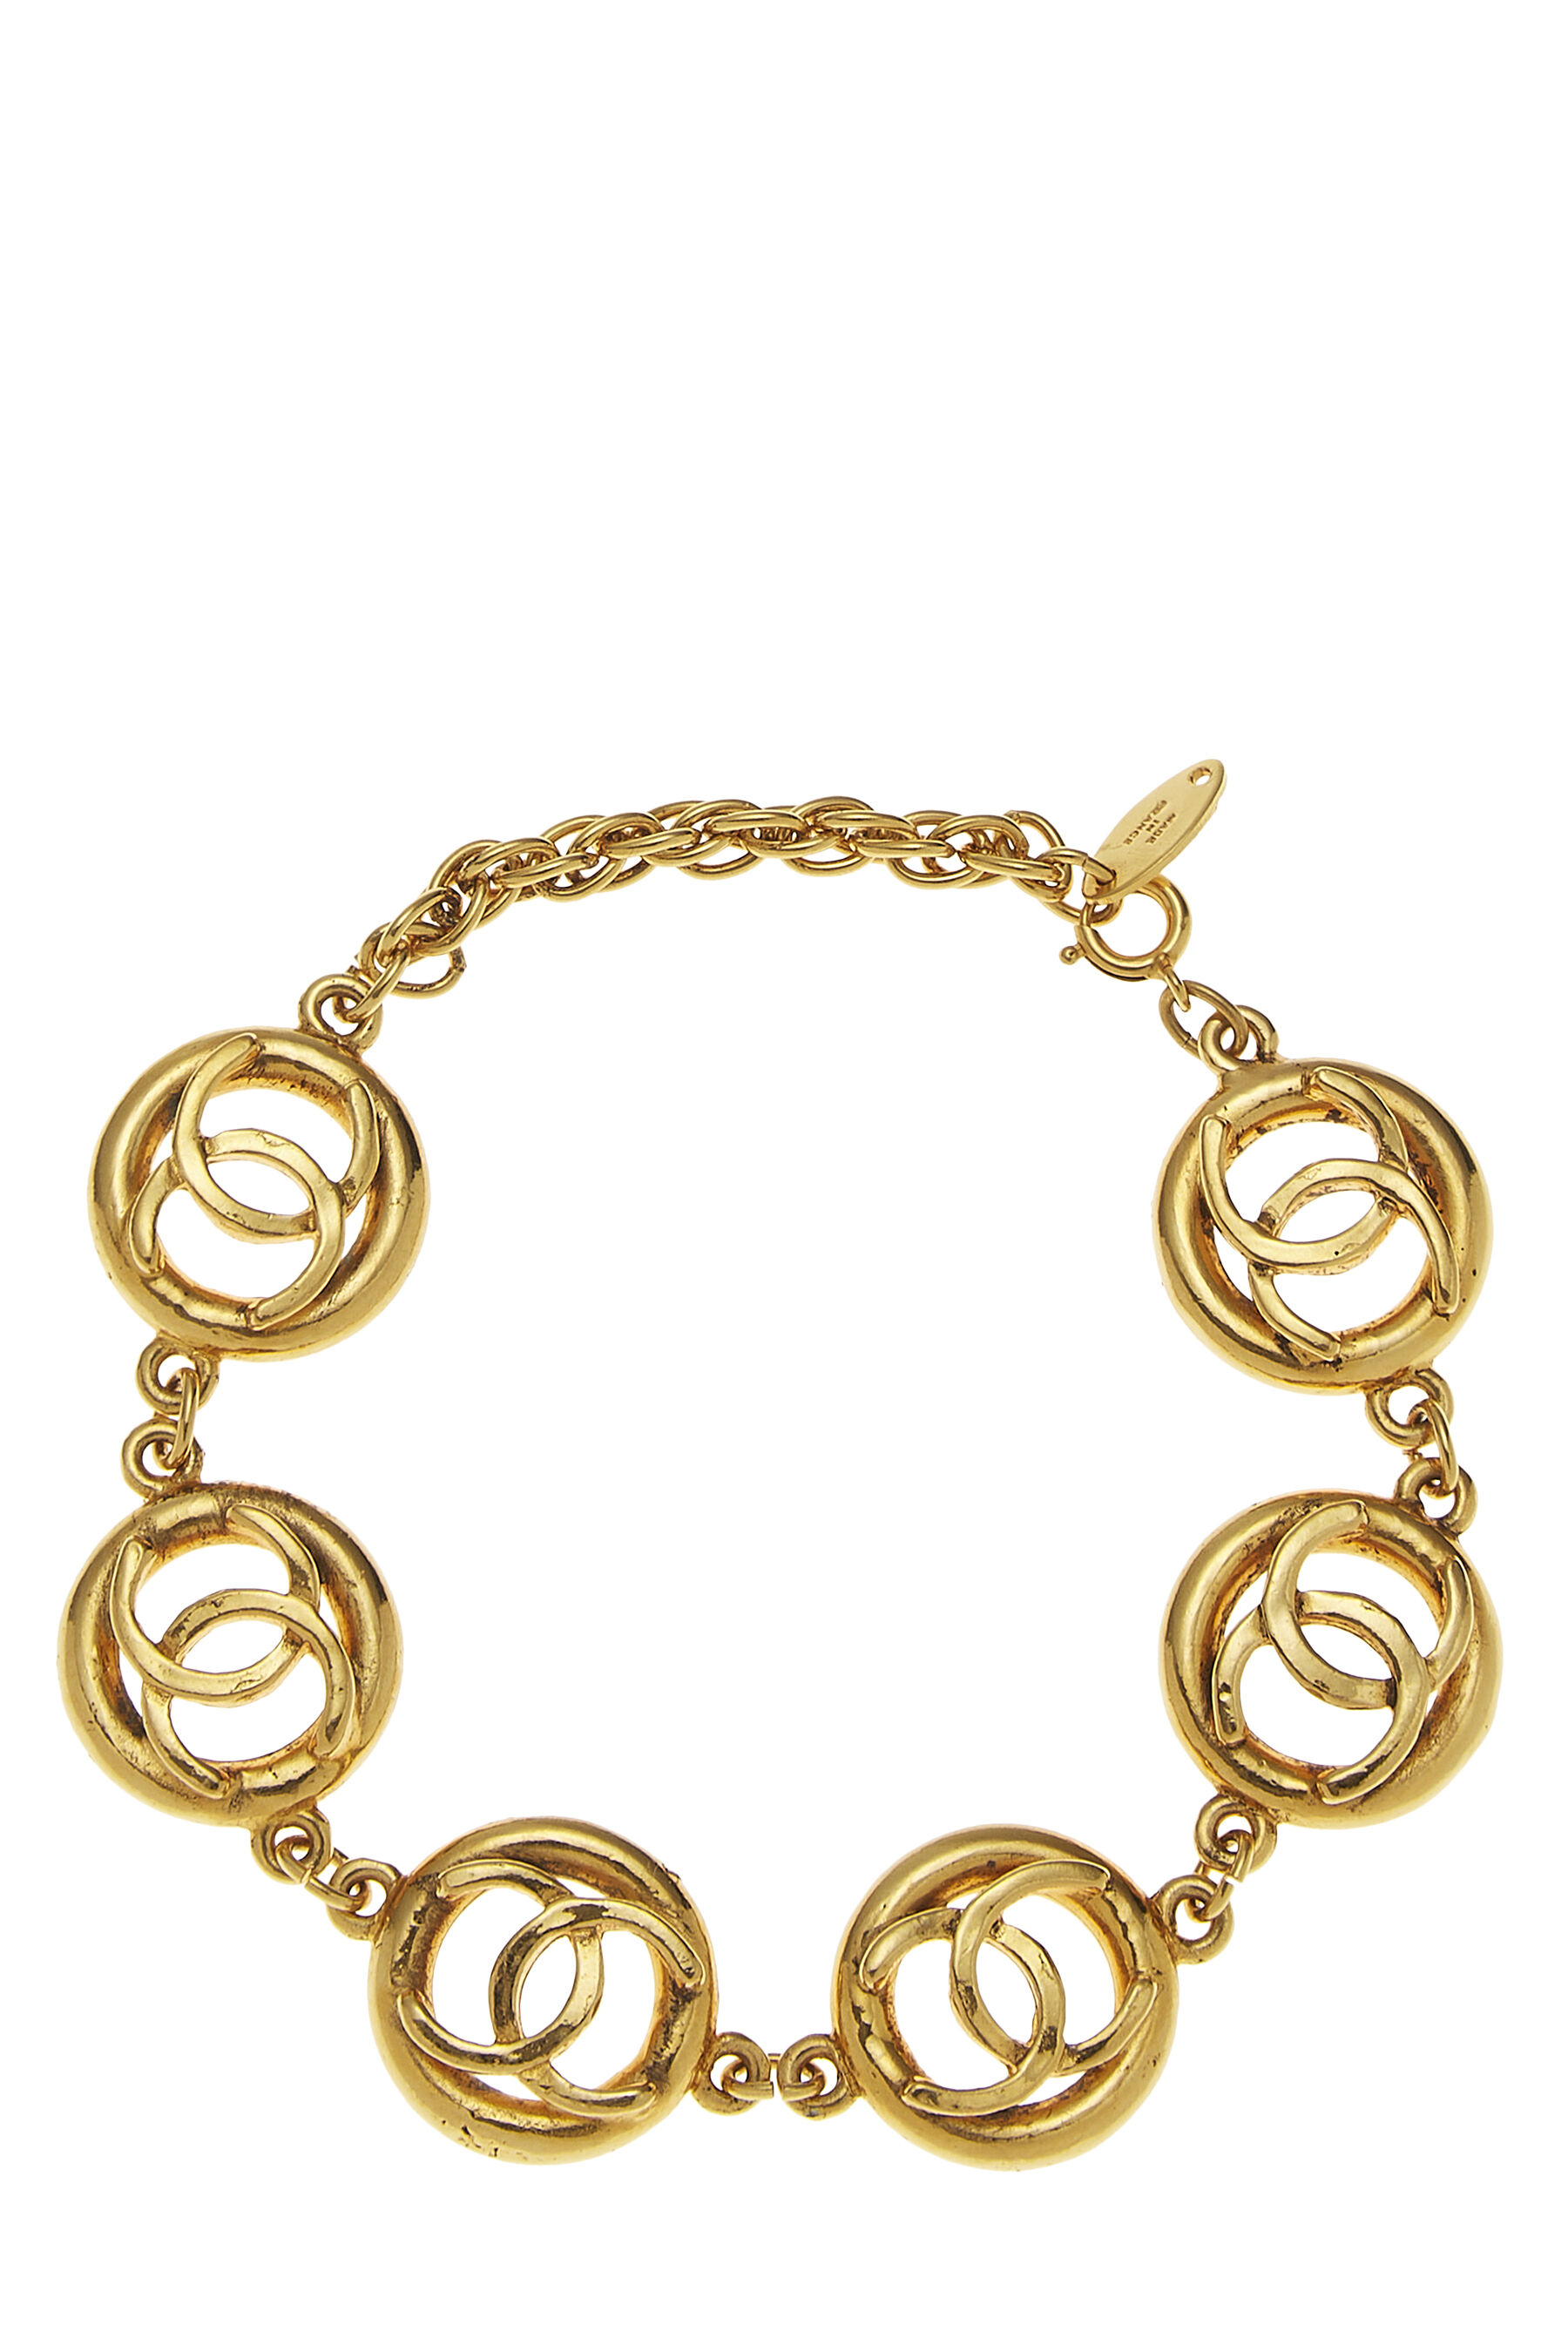 Chanel Gold CC Logo Bracelet Vintage